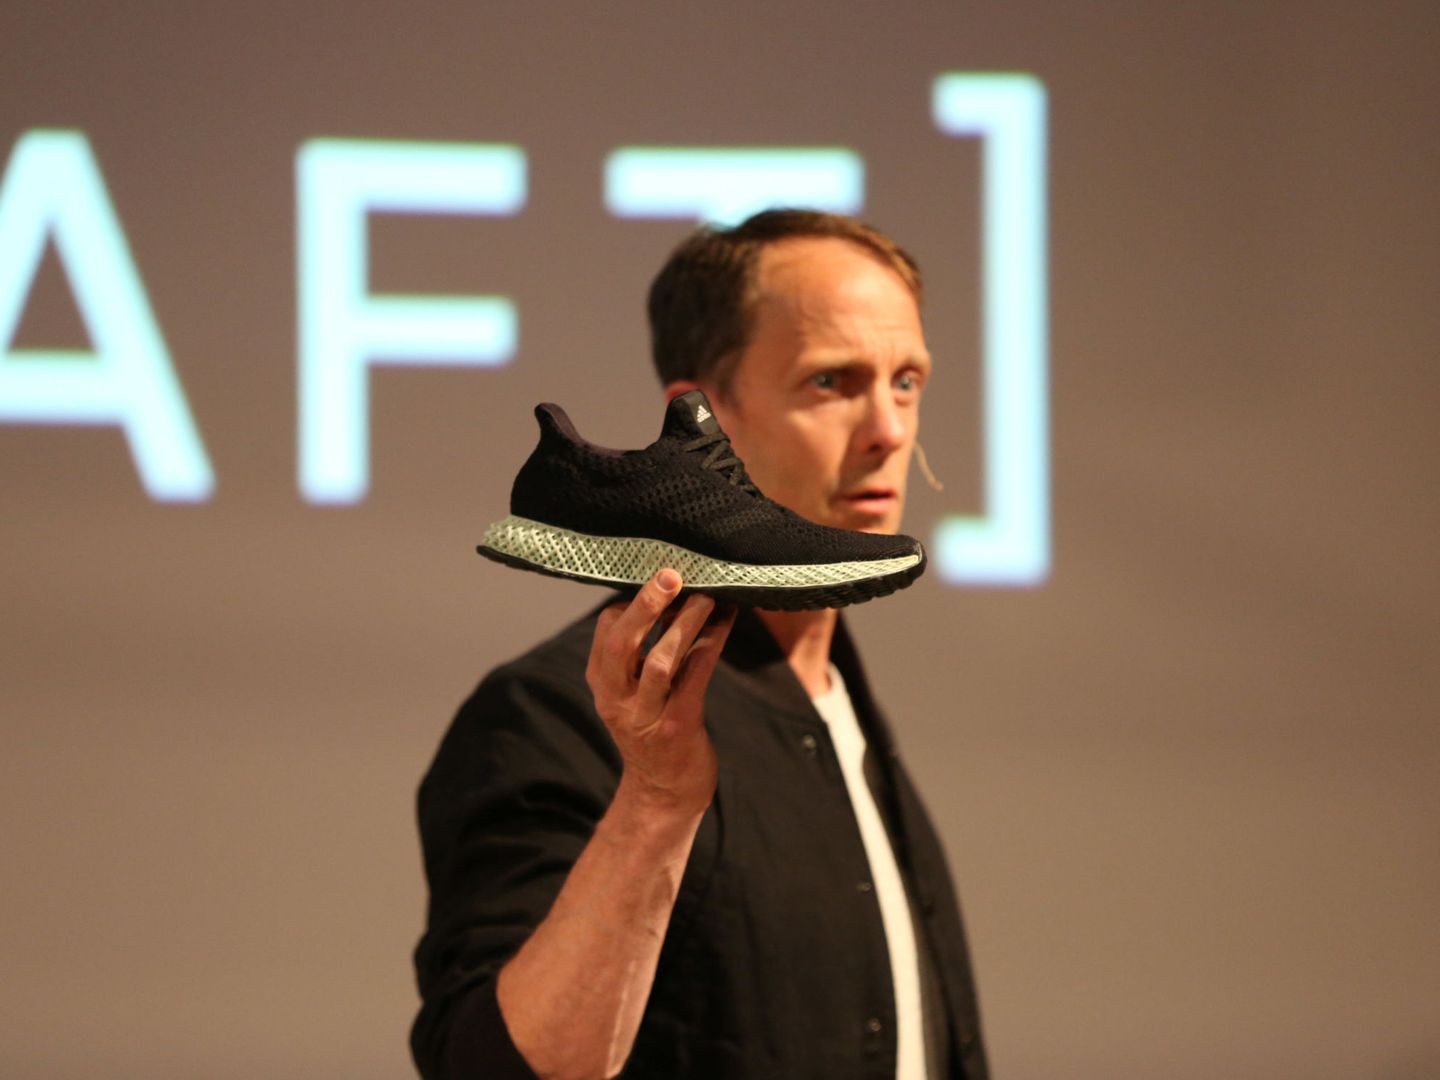 La iniciativa Futurecraft.Loop, desarrollada entre Adidas y Basf, permite reciclar calzado usado para reconvertirlo en nuevo. (EFE)